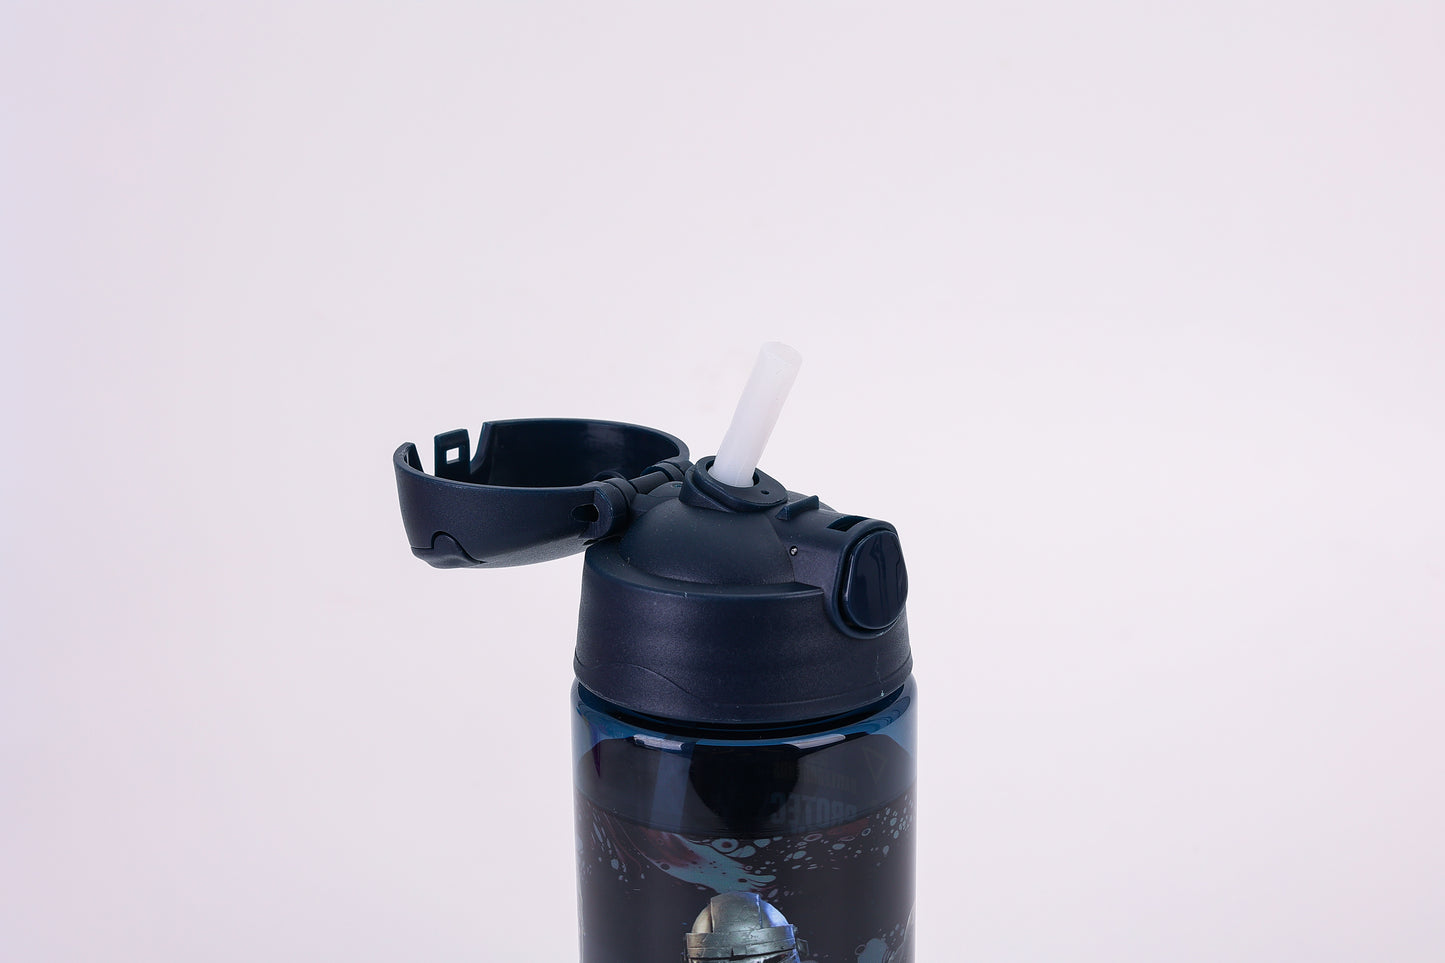 PUBG Water Bottle 500ml || مطارة ماء 500 مل ببجي